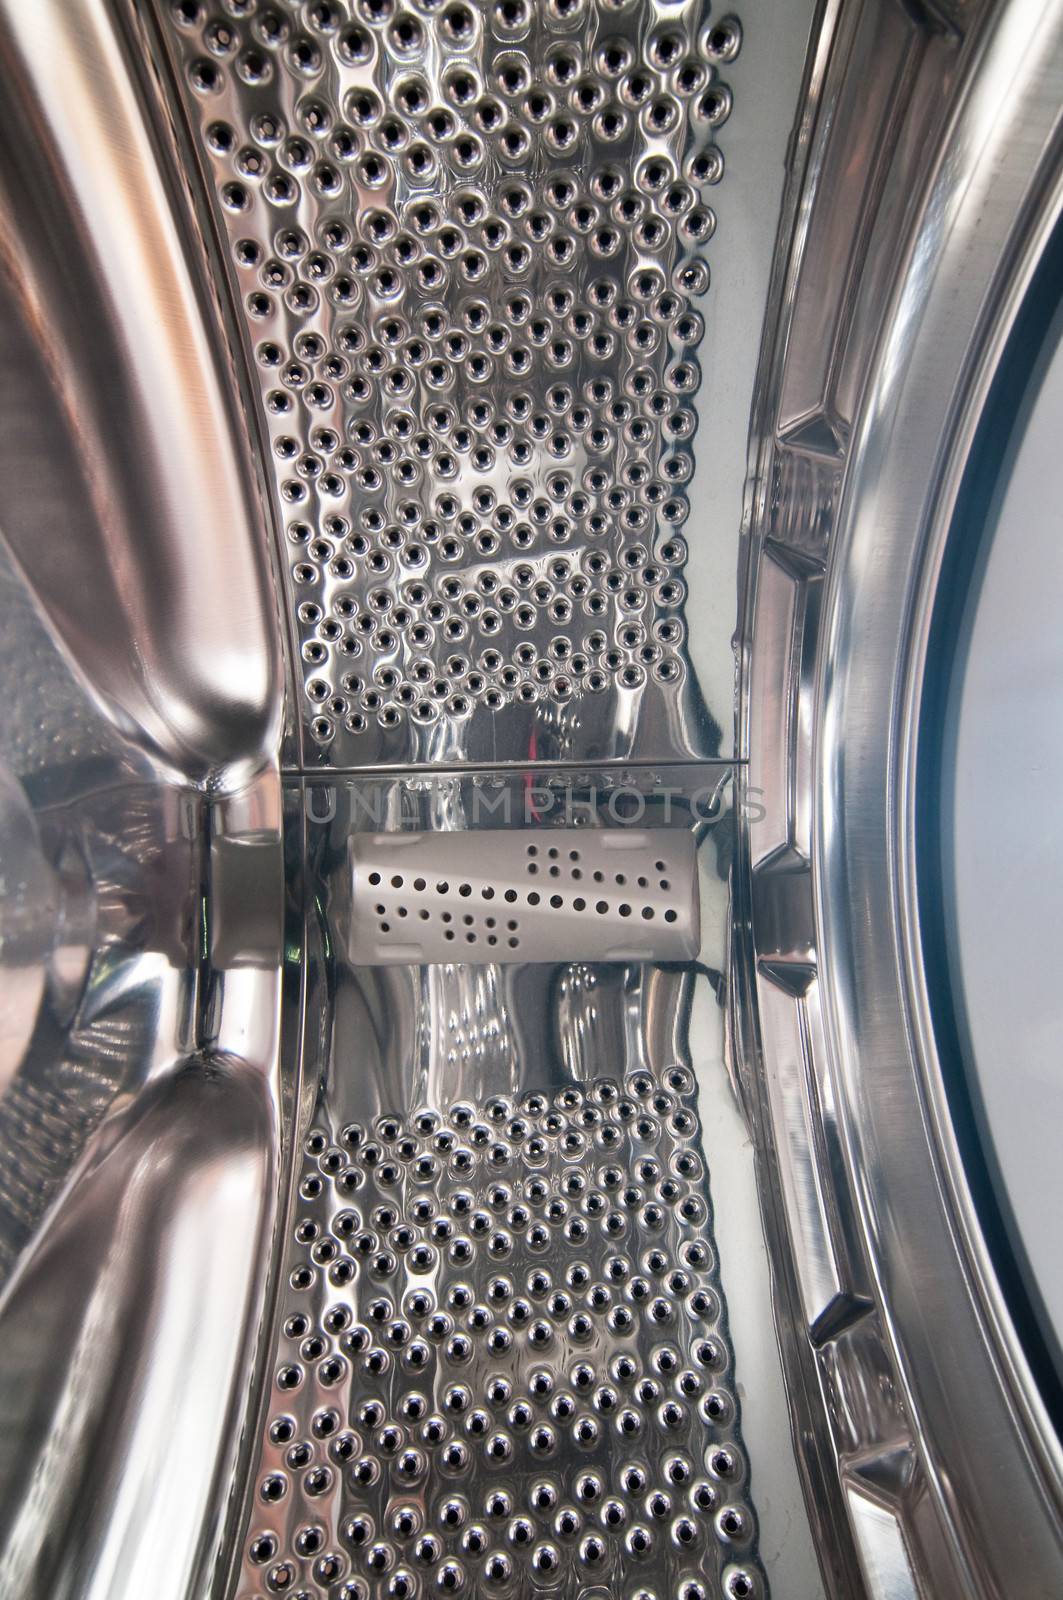 Interior view of a washing machine drum